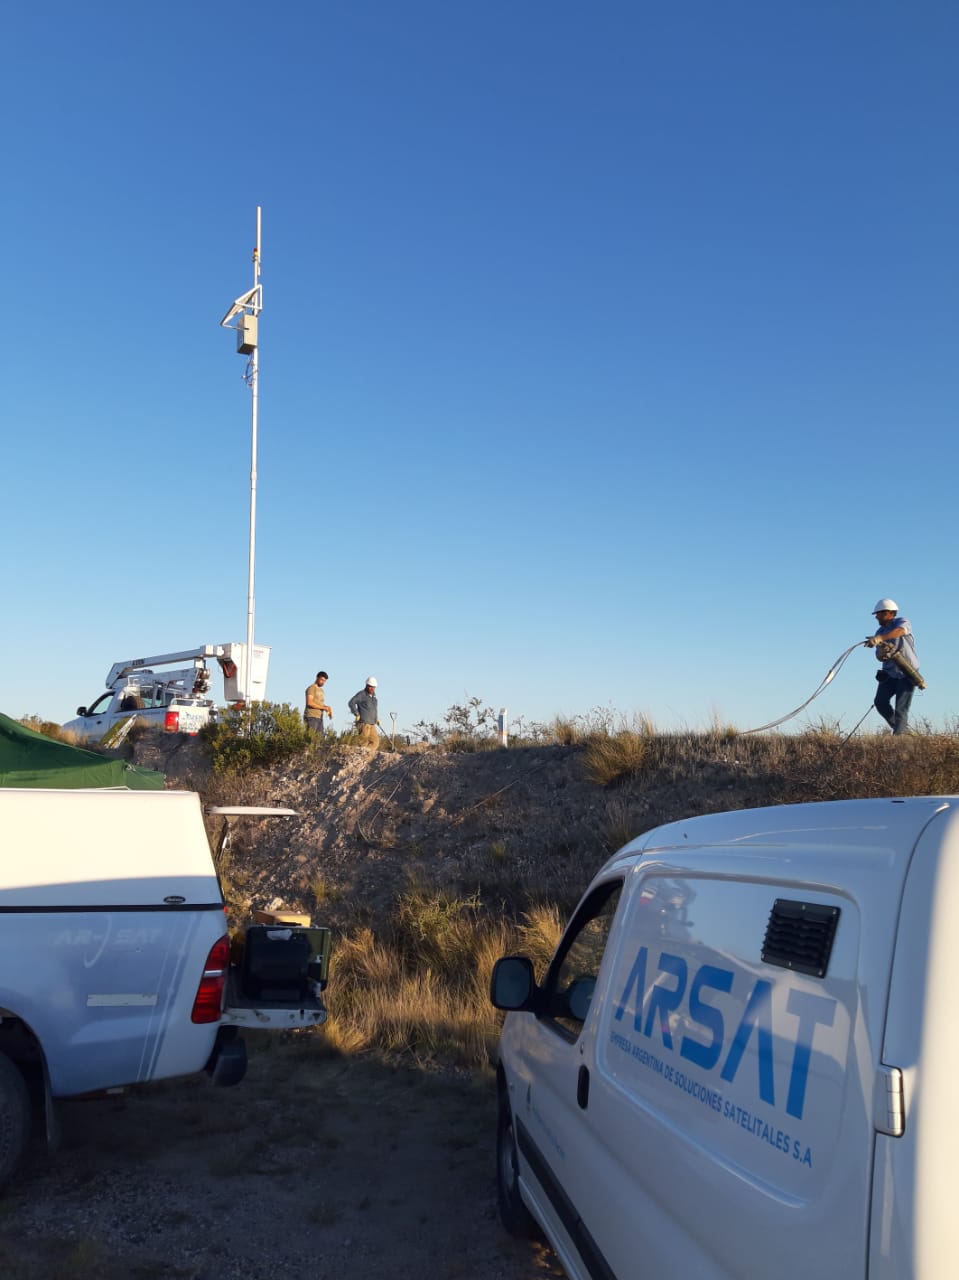 Arsat despliega 500 puntos WiFi en rutas argentinas